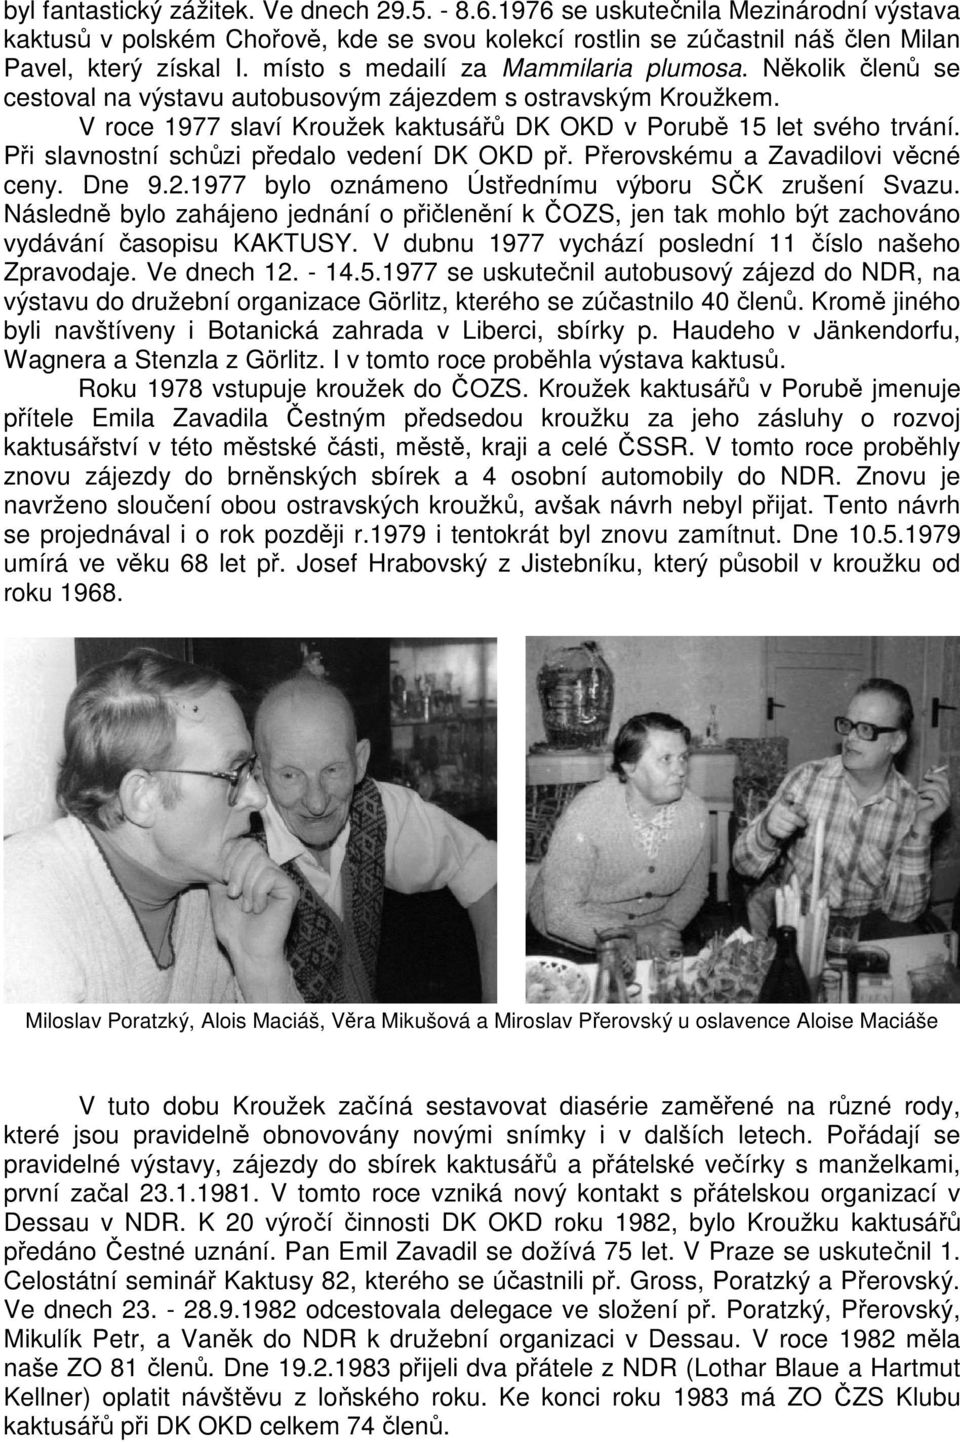 Při slavnostní schůzi předalo vedení DK OKD př. Přerovskému a Zavadilovi věcné ceny. Dne 9.2.1977 bylo oznámeno Ústřednímu výboru SČK zrušení Svazu.